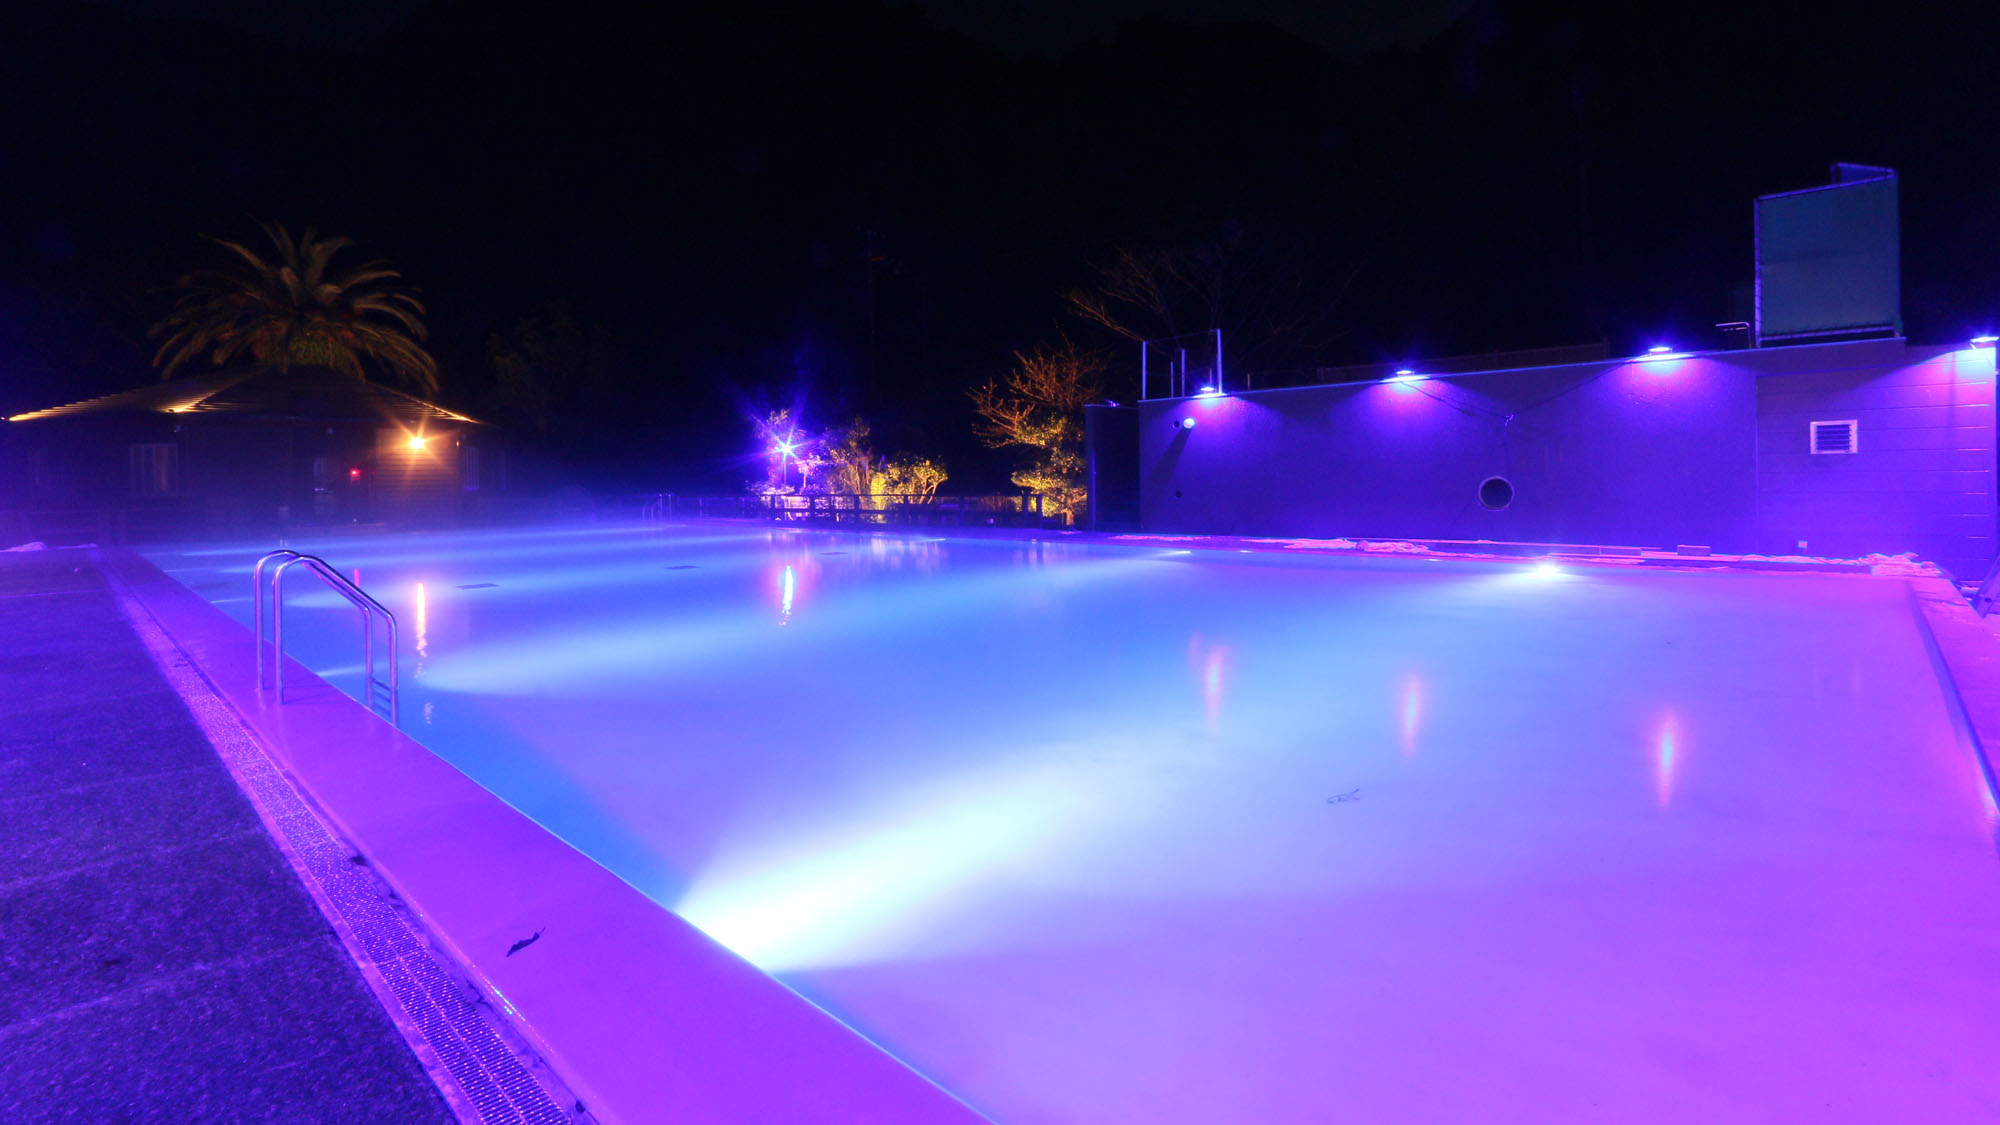 ナイトプール -Night pool-◆ライトアップにより浮かび上がるプールのフォルム